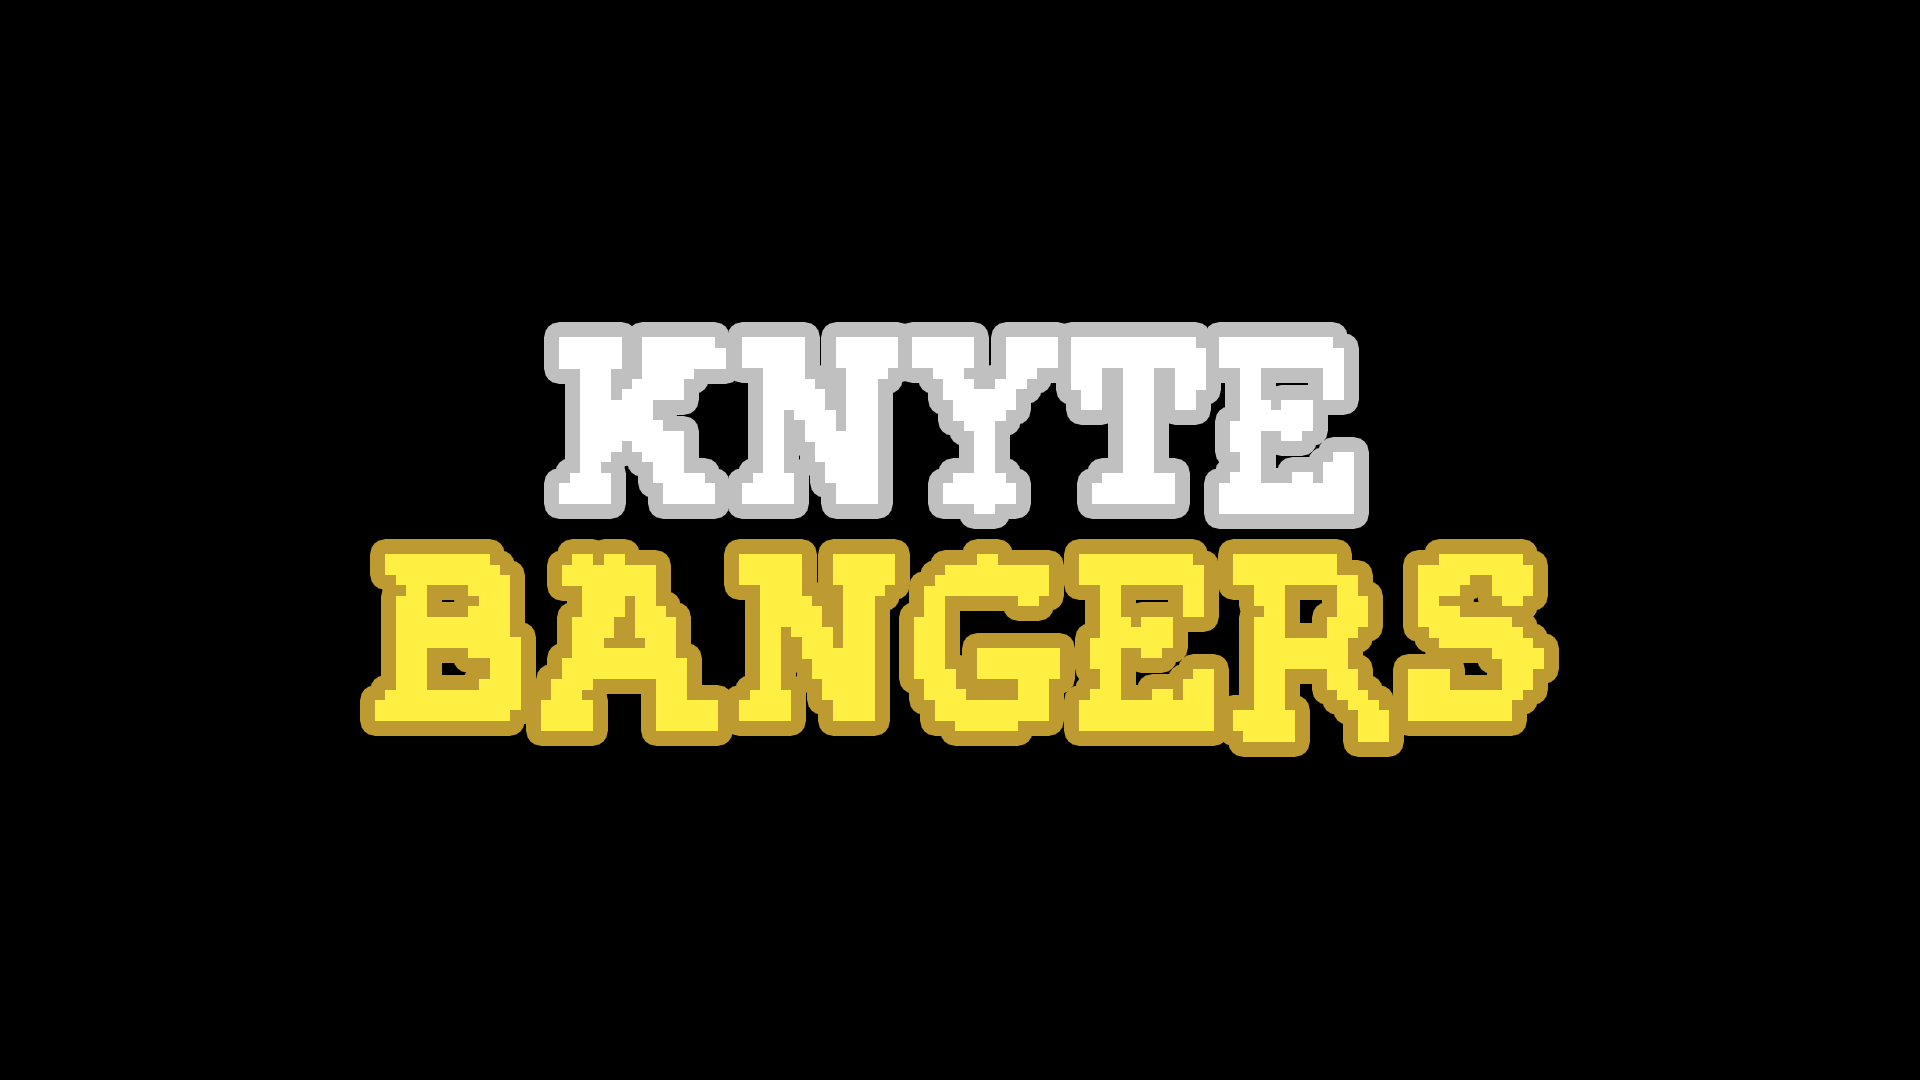 KnyteBangers